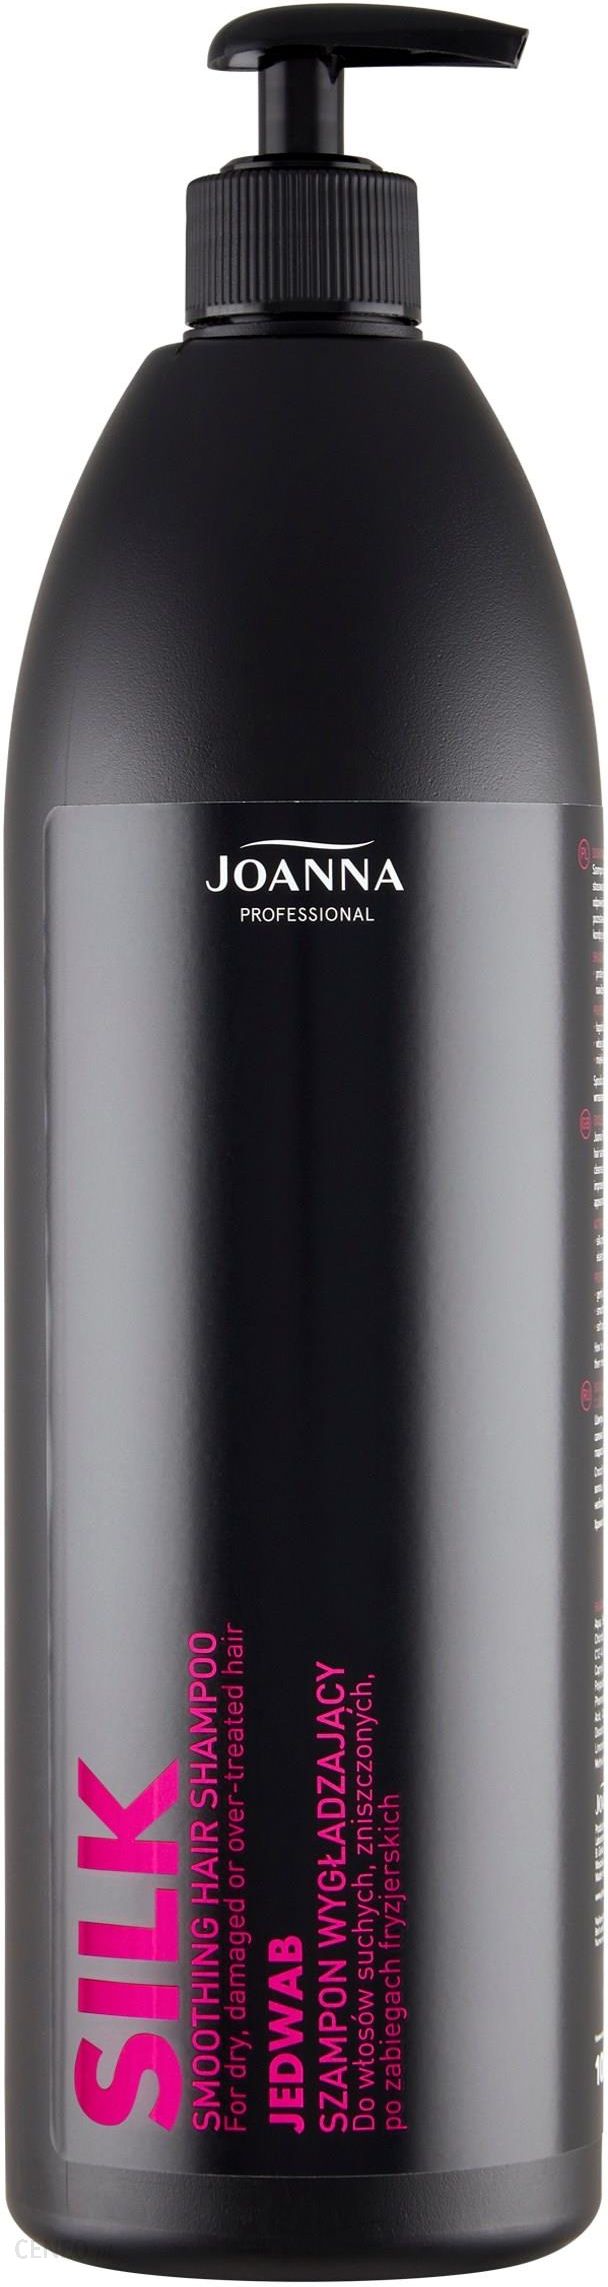 joanna szampon ułatwiający rozczesywanie wizaz